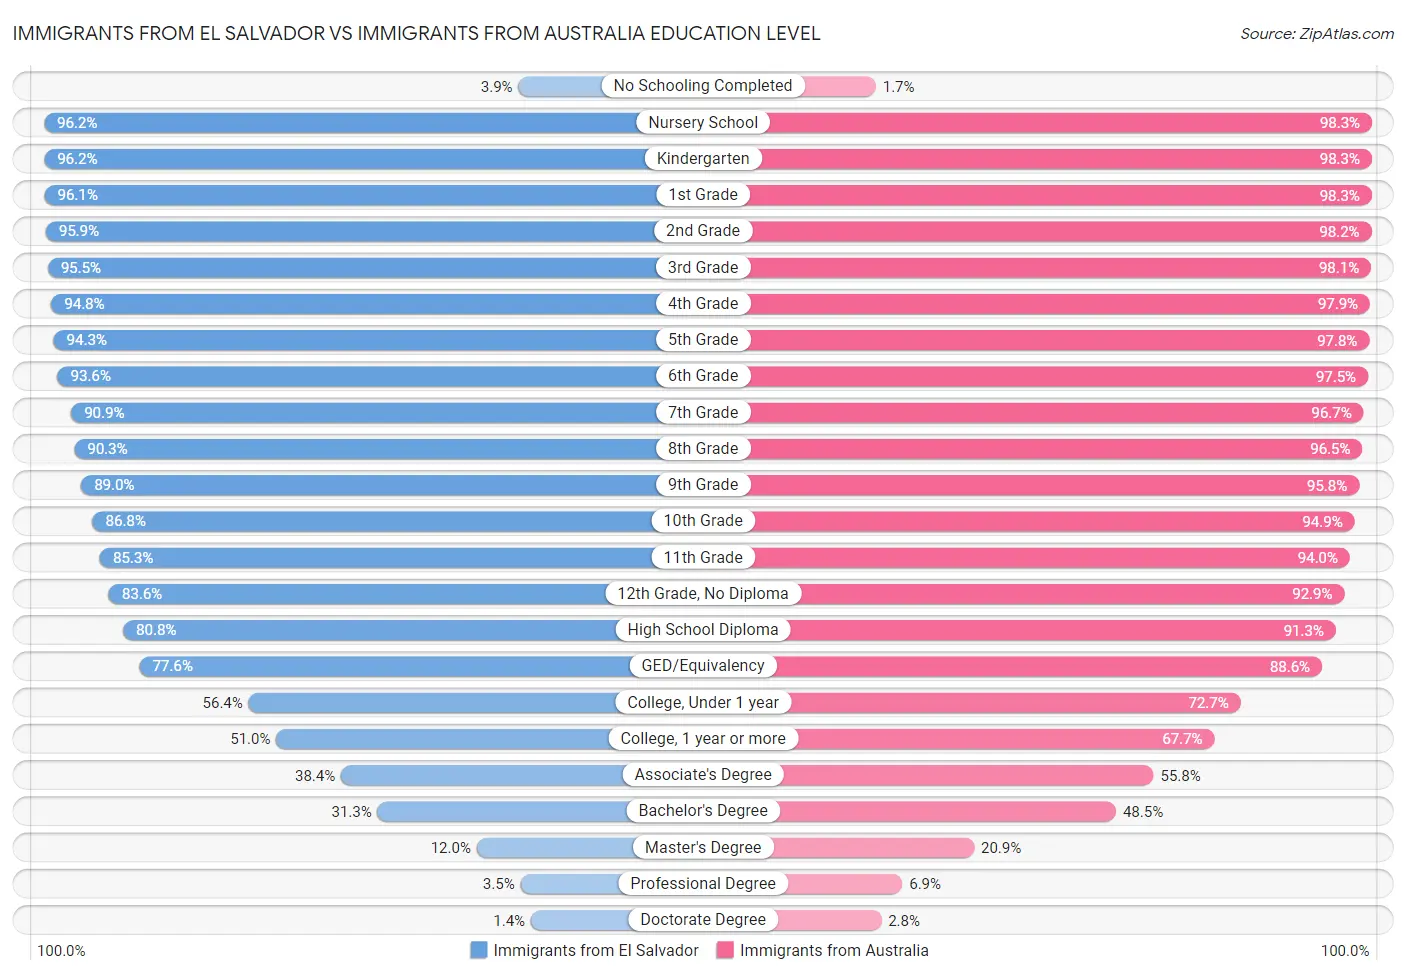 Immigrants from El Salvador vs Immigrants from Australia Education Level